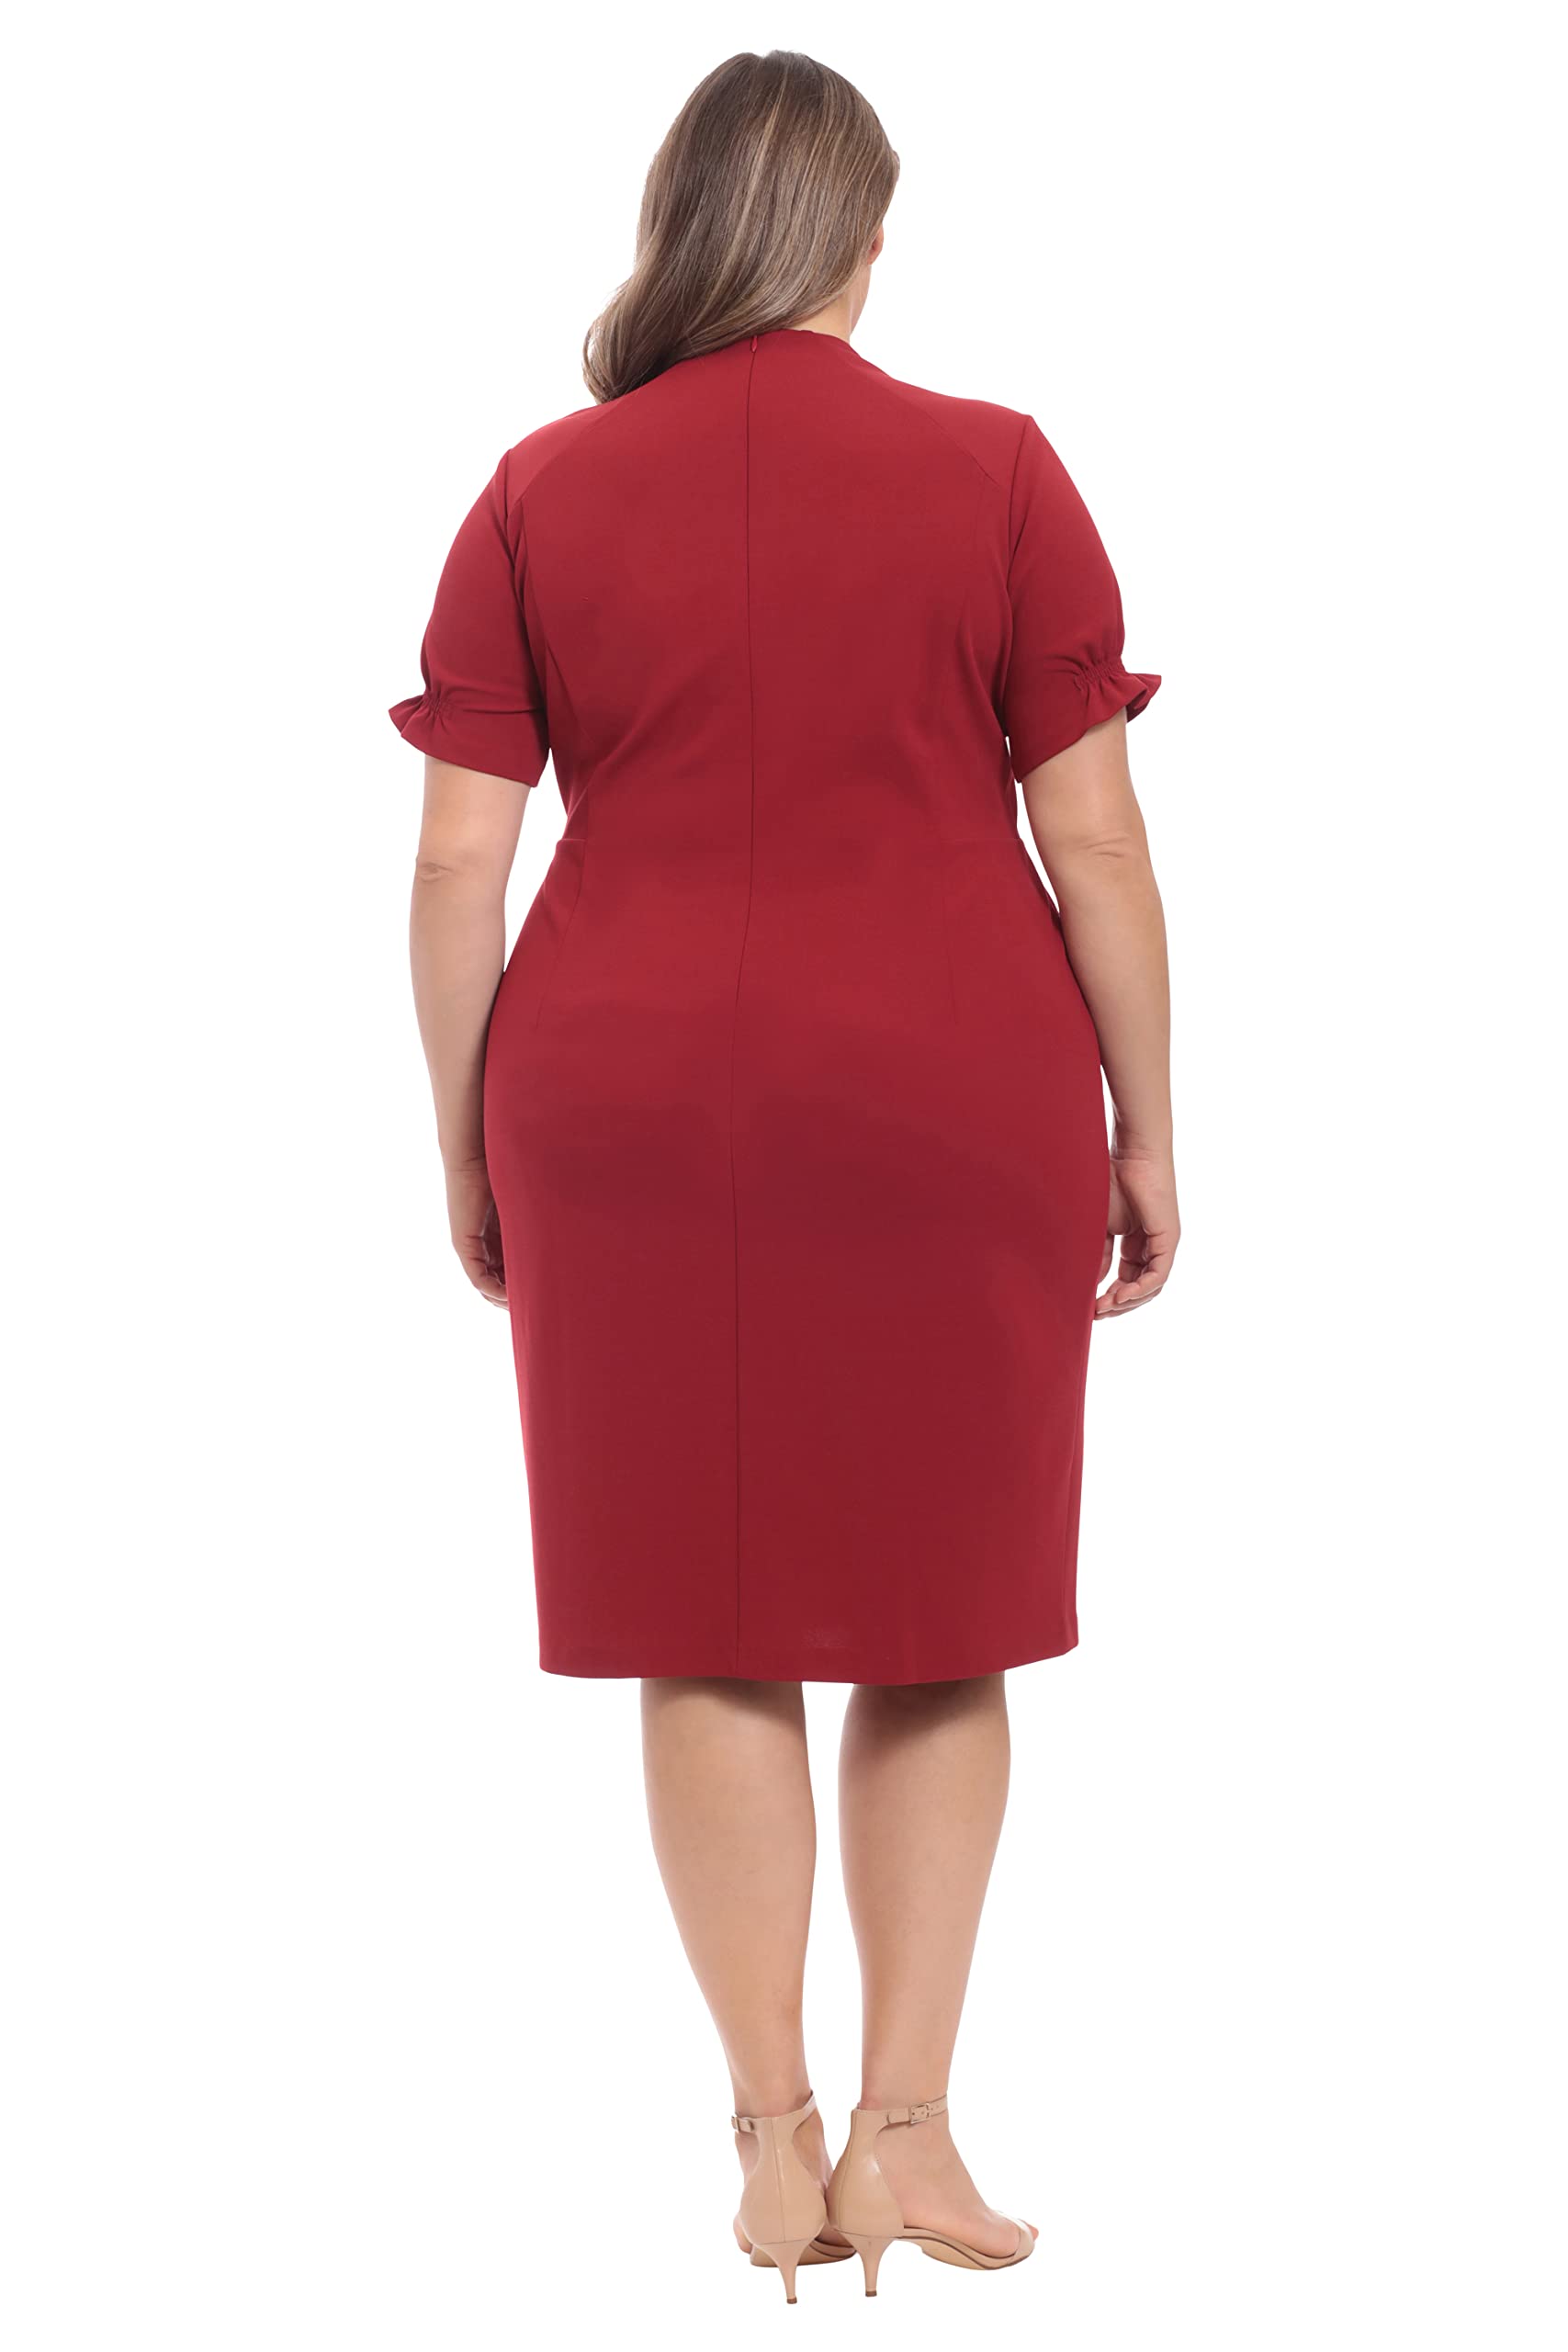 London Times Women's Petite Open Neck Puff Feminine Sleeve Seamed Flattering Sheath Dress